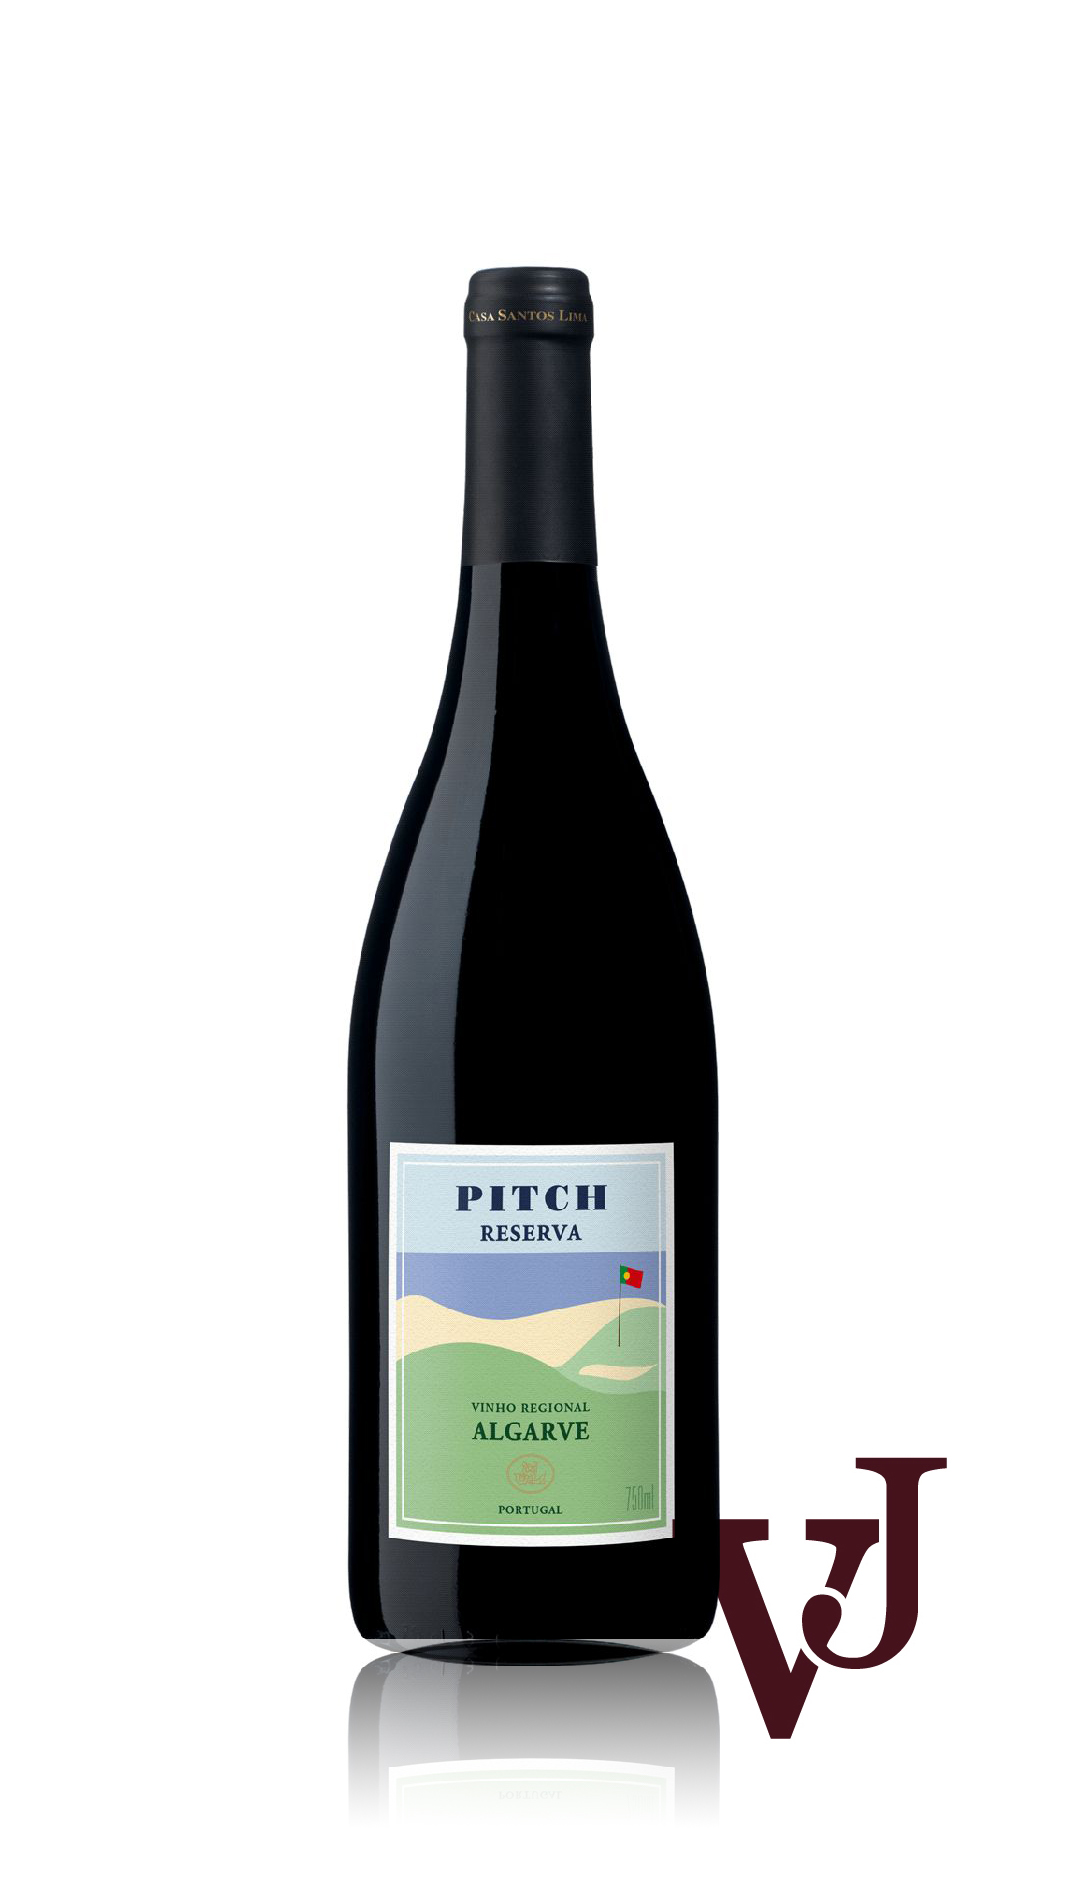 Rött Vin - Pitch artikel nummer 5829001 från producenten Casa Santos Lima från området Portugal